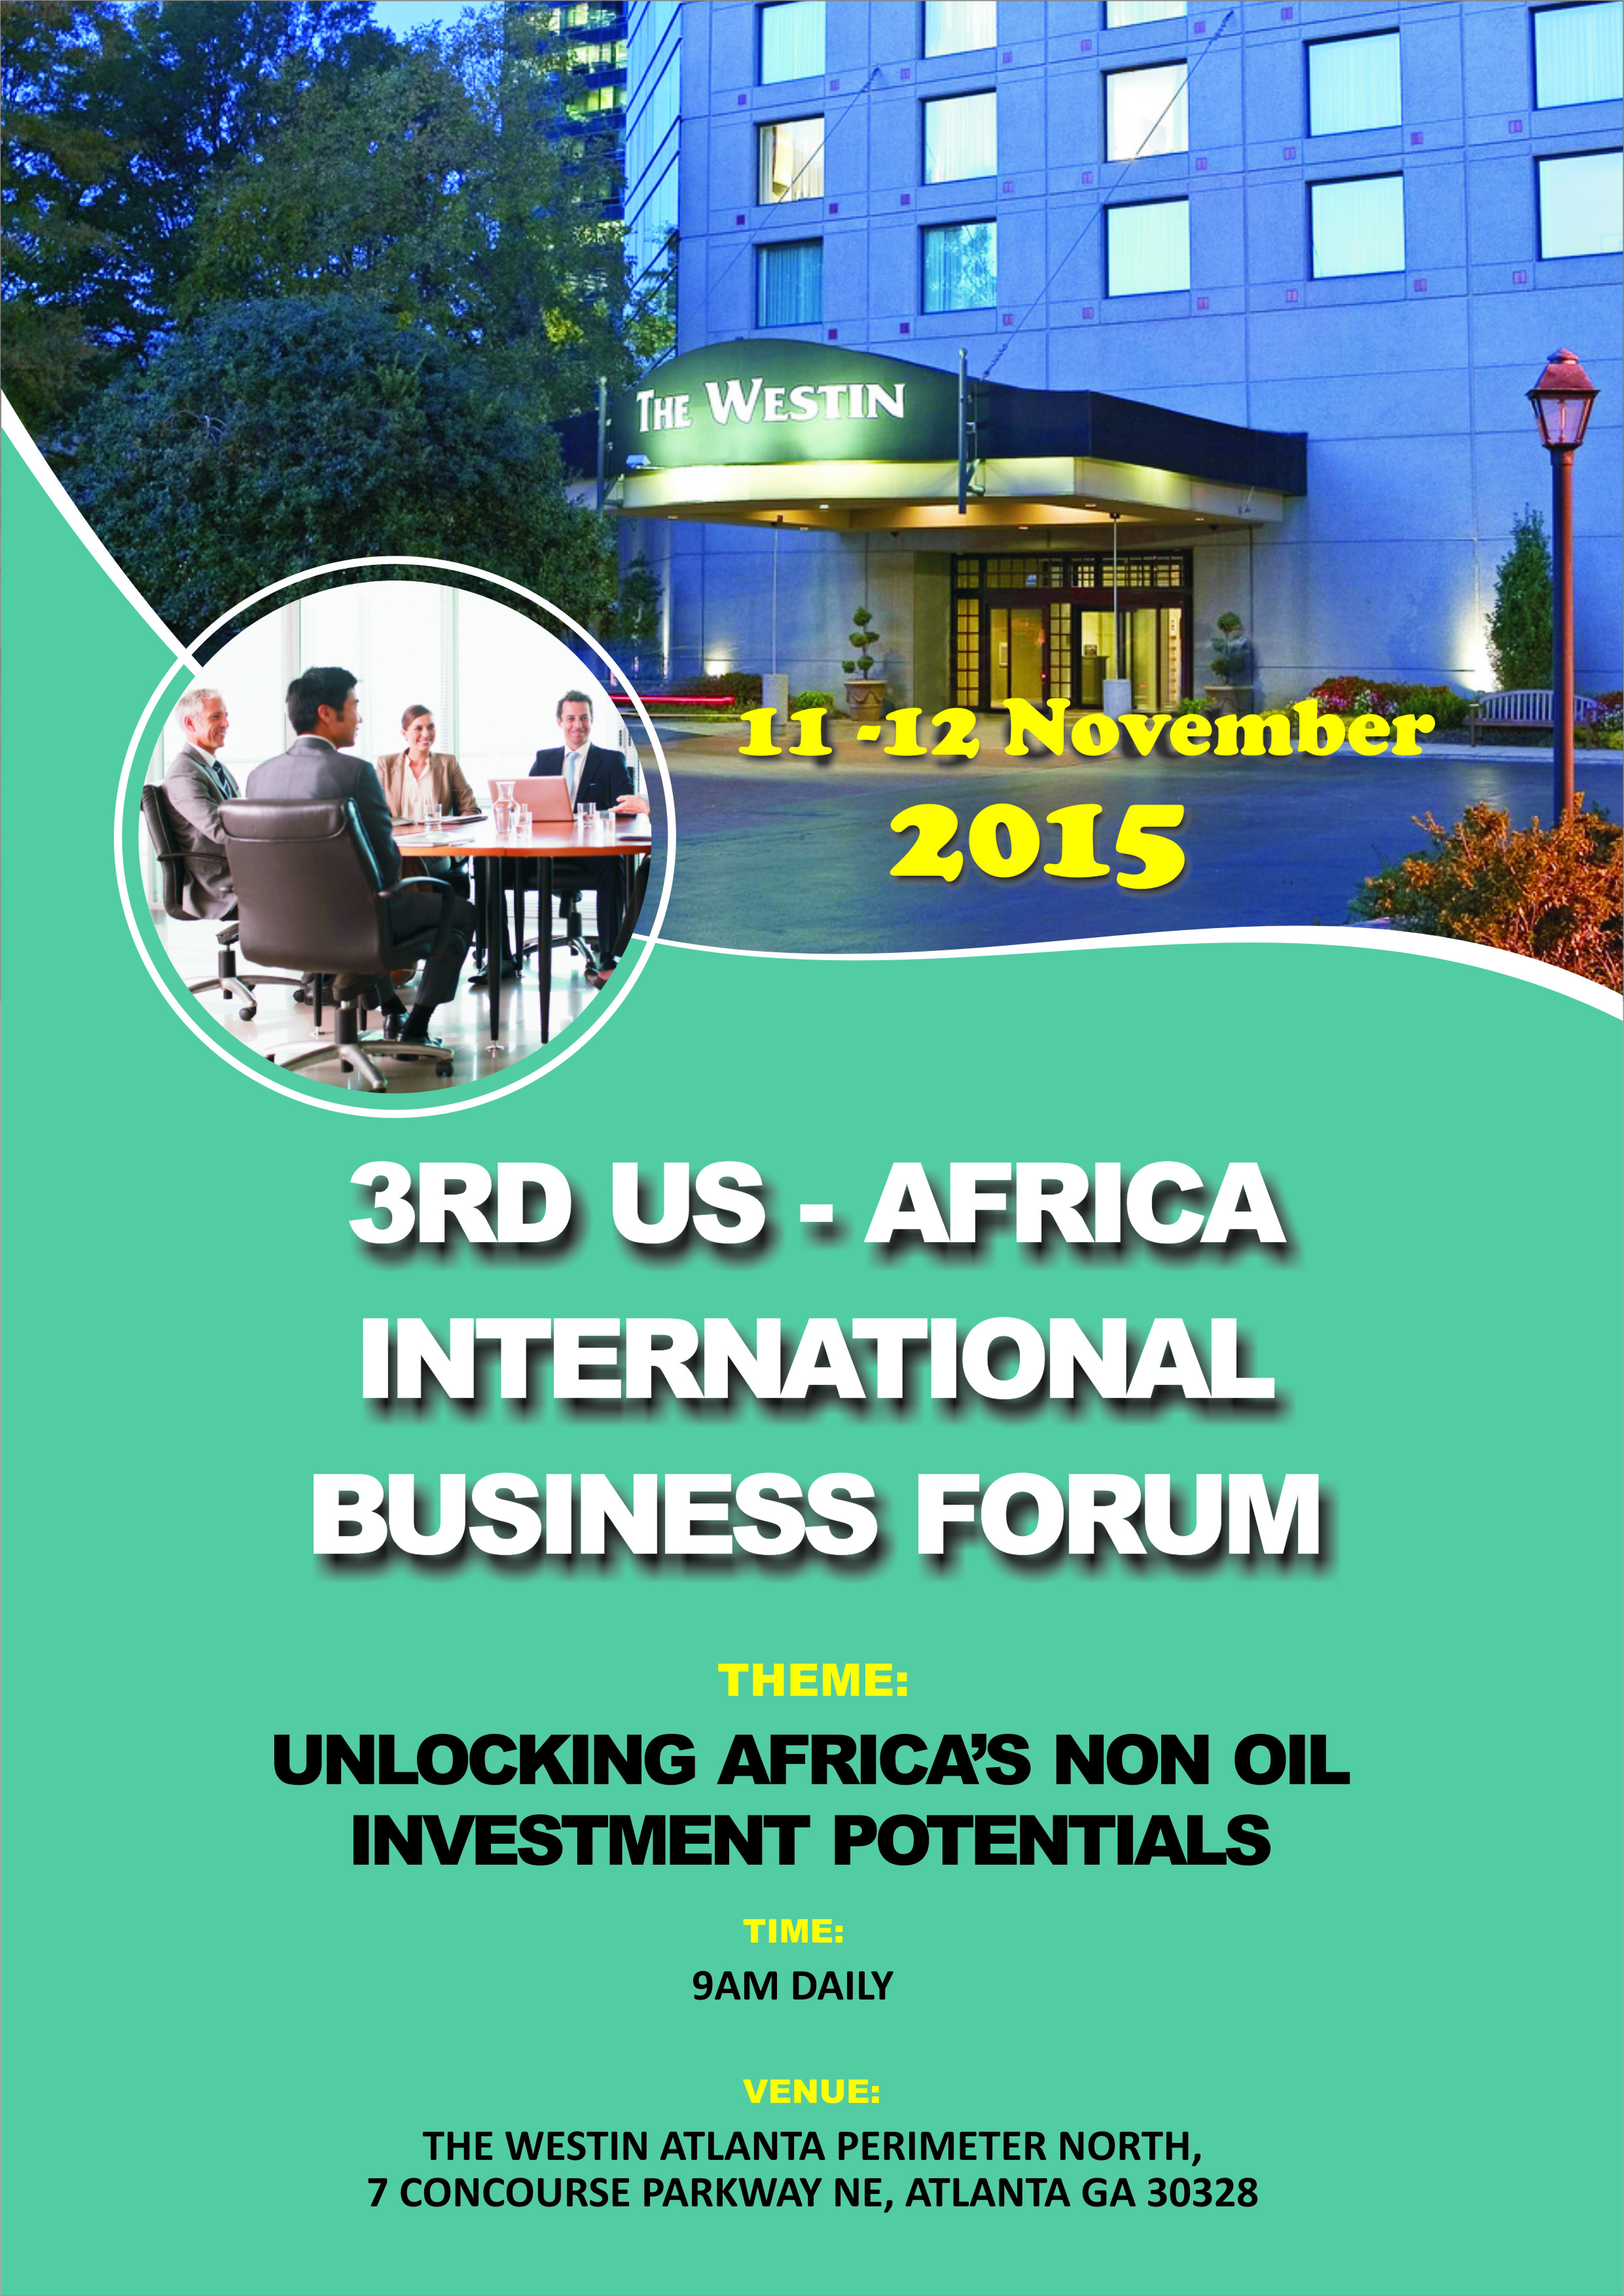 3rd U.S – Africa International Business Forum 2015